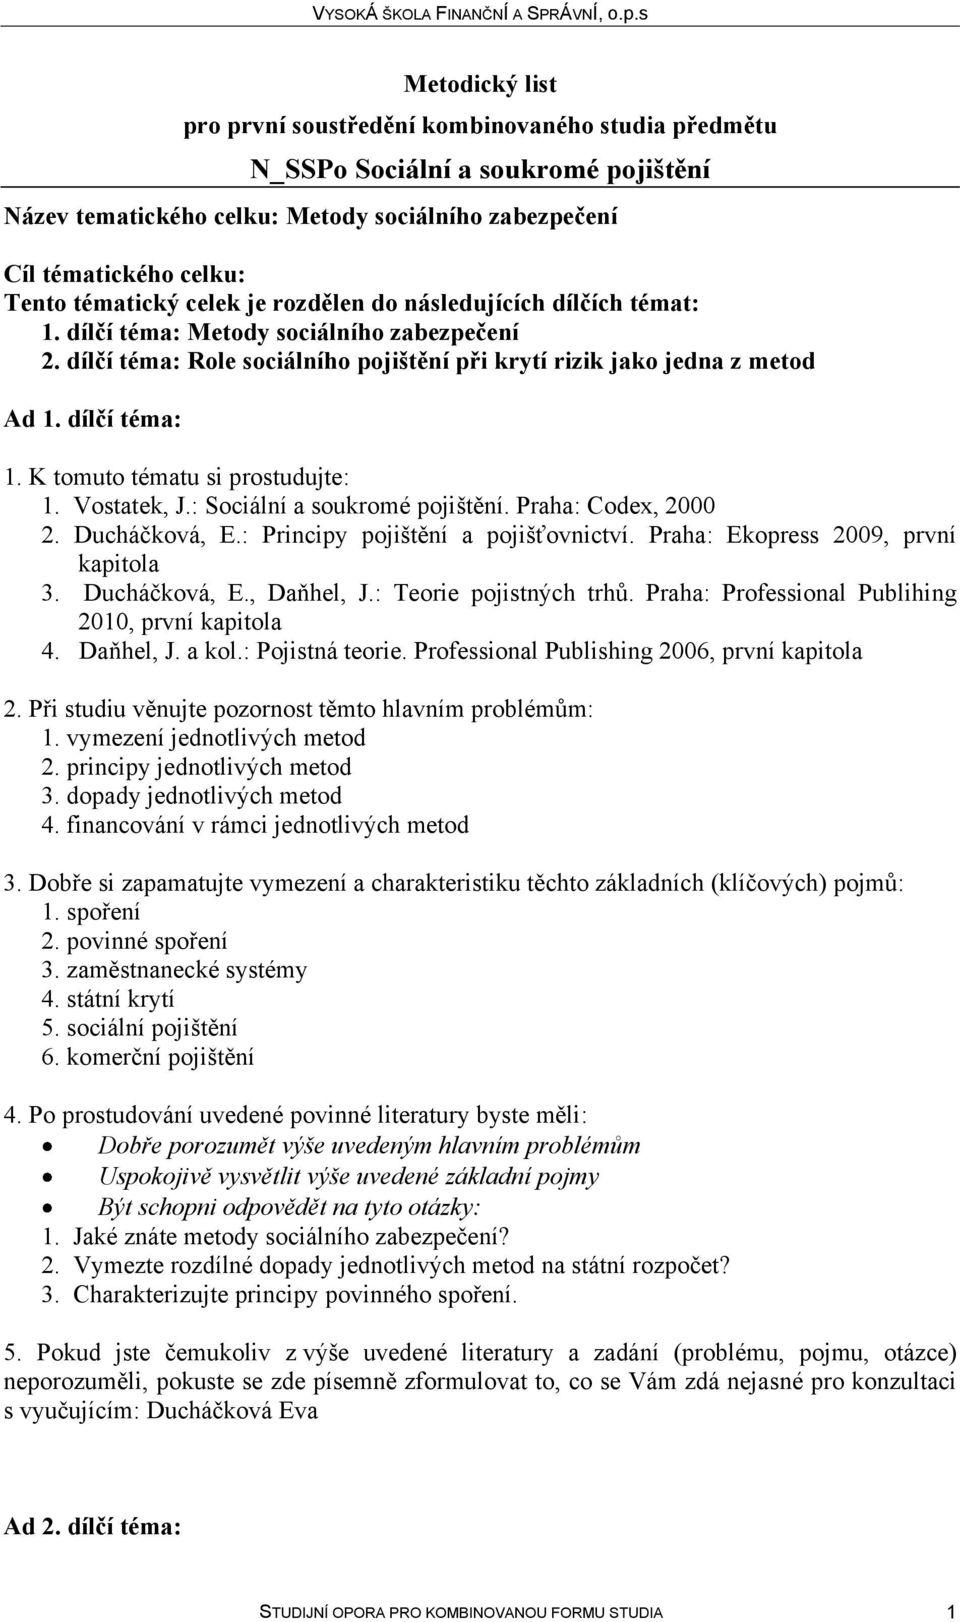 Praha: Codex, 2000 2. Ducháčková, E.: Principy pojištění a pojišťovnictví. Praha: Ekopress 2009, první kapitola 3. Ducháčková, E., Daňhel, J.: Teorie pojistných trhů.